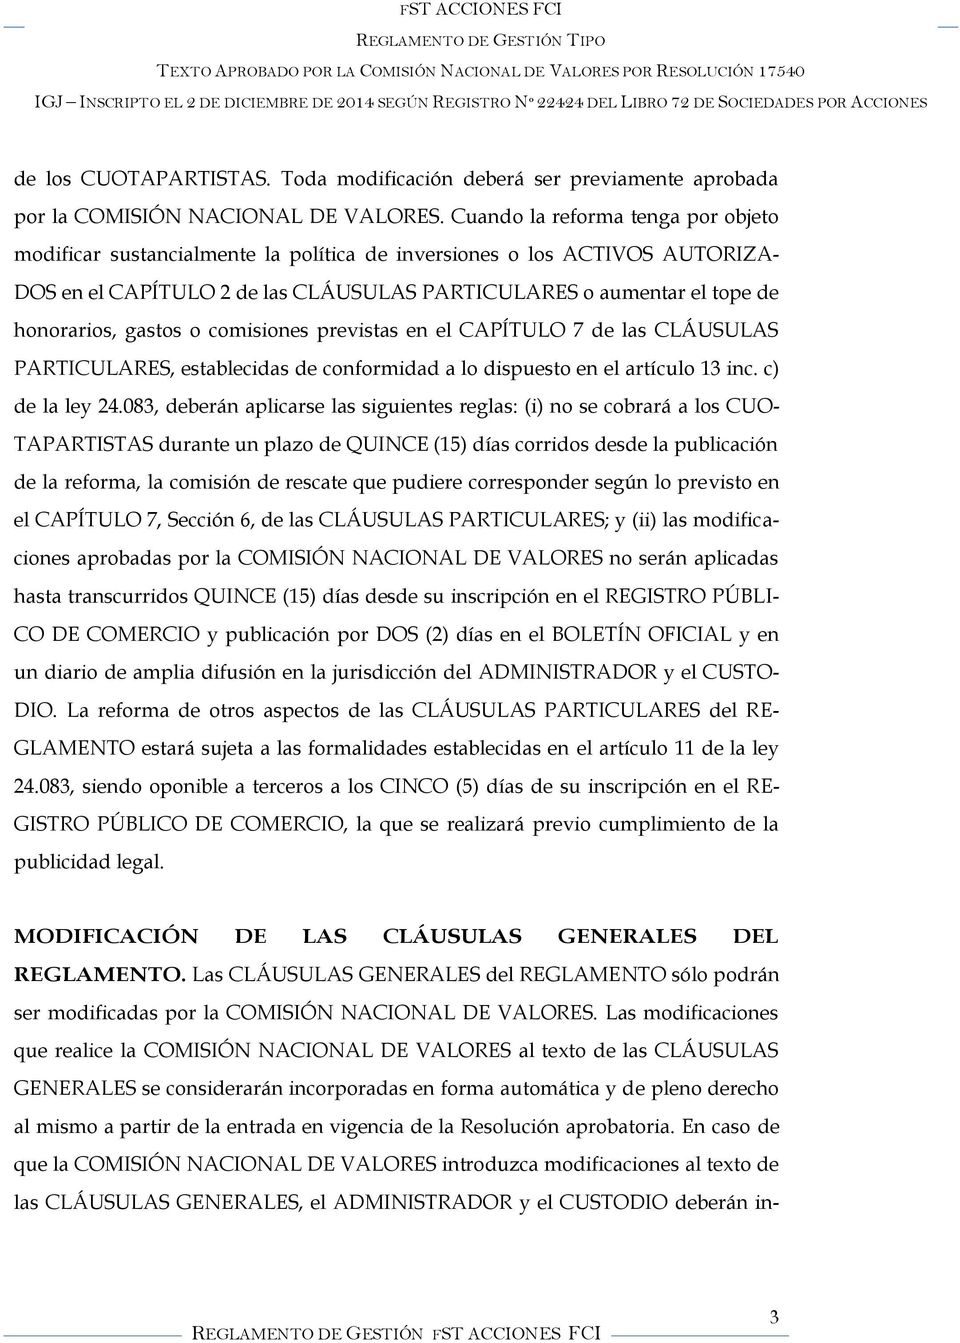 gastos o comisiones previstas en el CAPÍTULO 7 de las CLÁUSULAS PARTICULARES, establecidas de conformidad a lo dispuesto en el artículo 13 inc. c) de la ley 24.